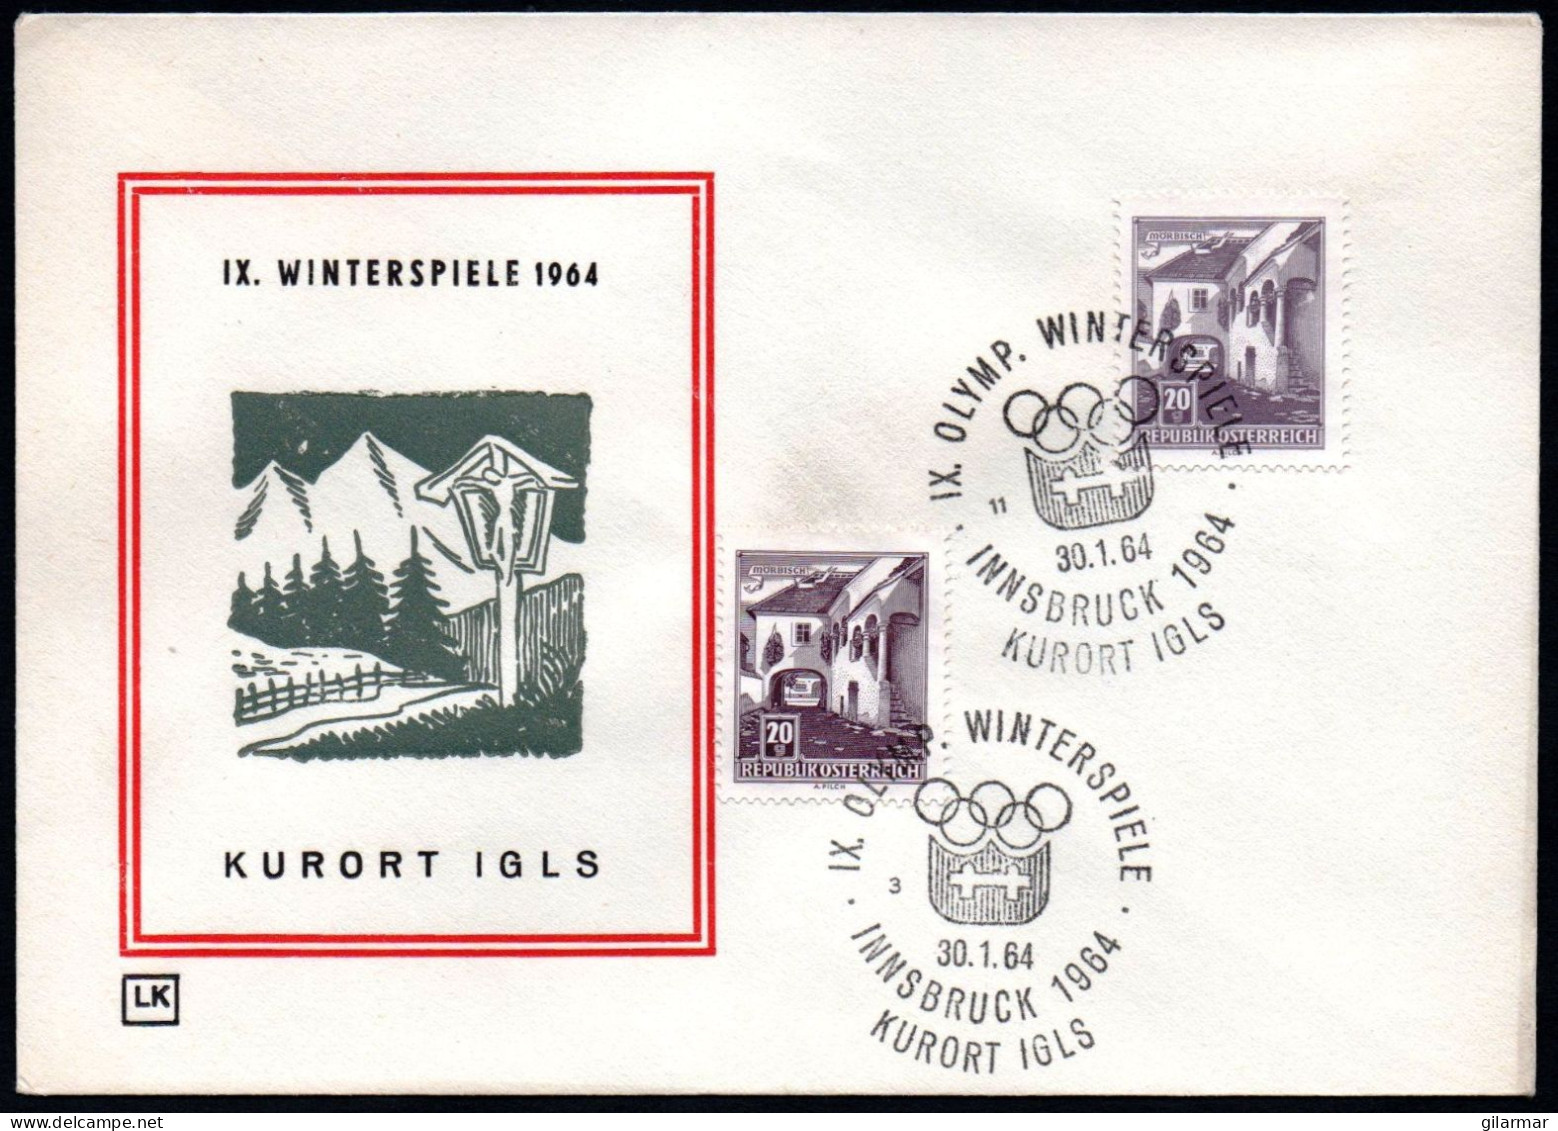 AUSTRIA KURORT IGLS 1964 - IX OLYMPIC WINTER GAMES - INNSBRUCK '64 - CANCELS # 3 & 11 - G - Hiver 1964: Innsbruck